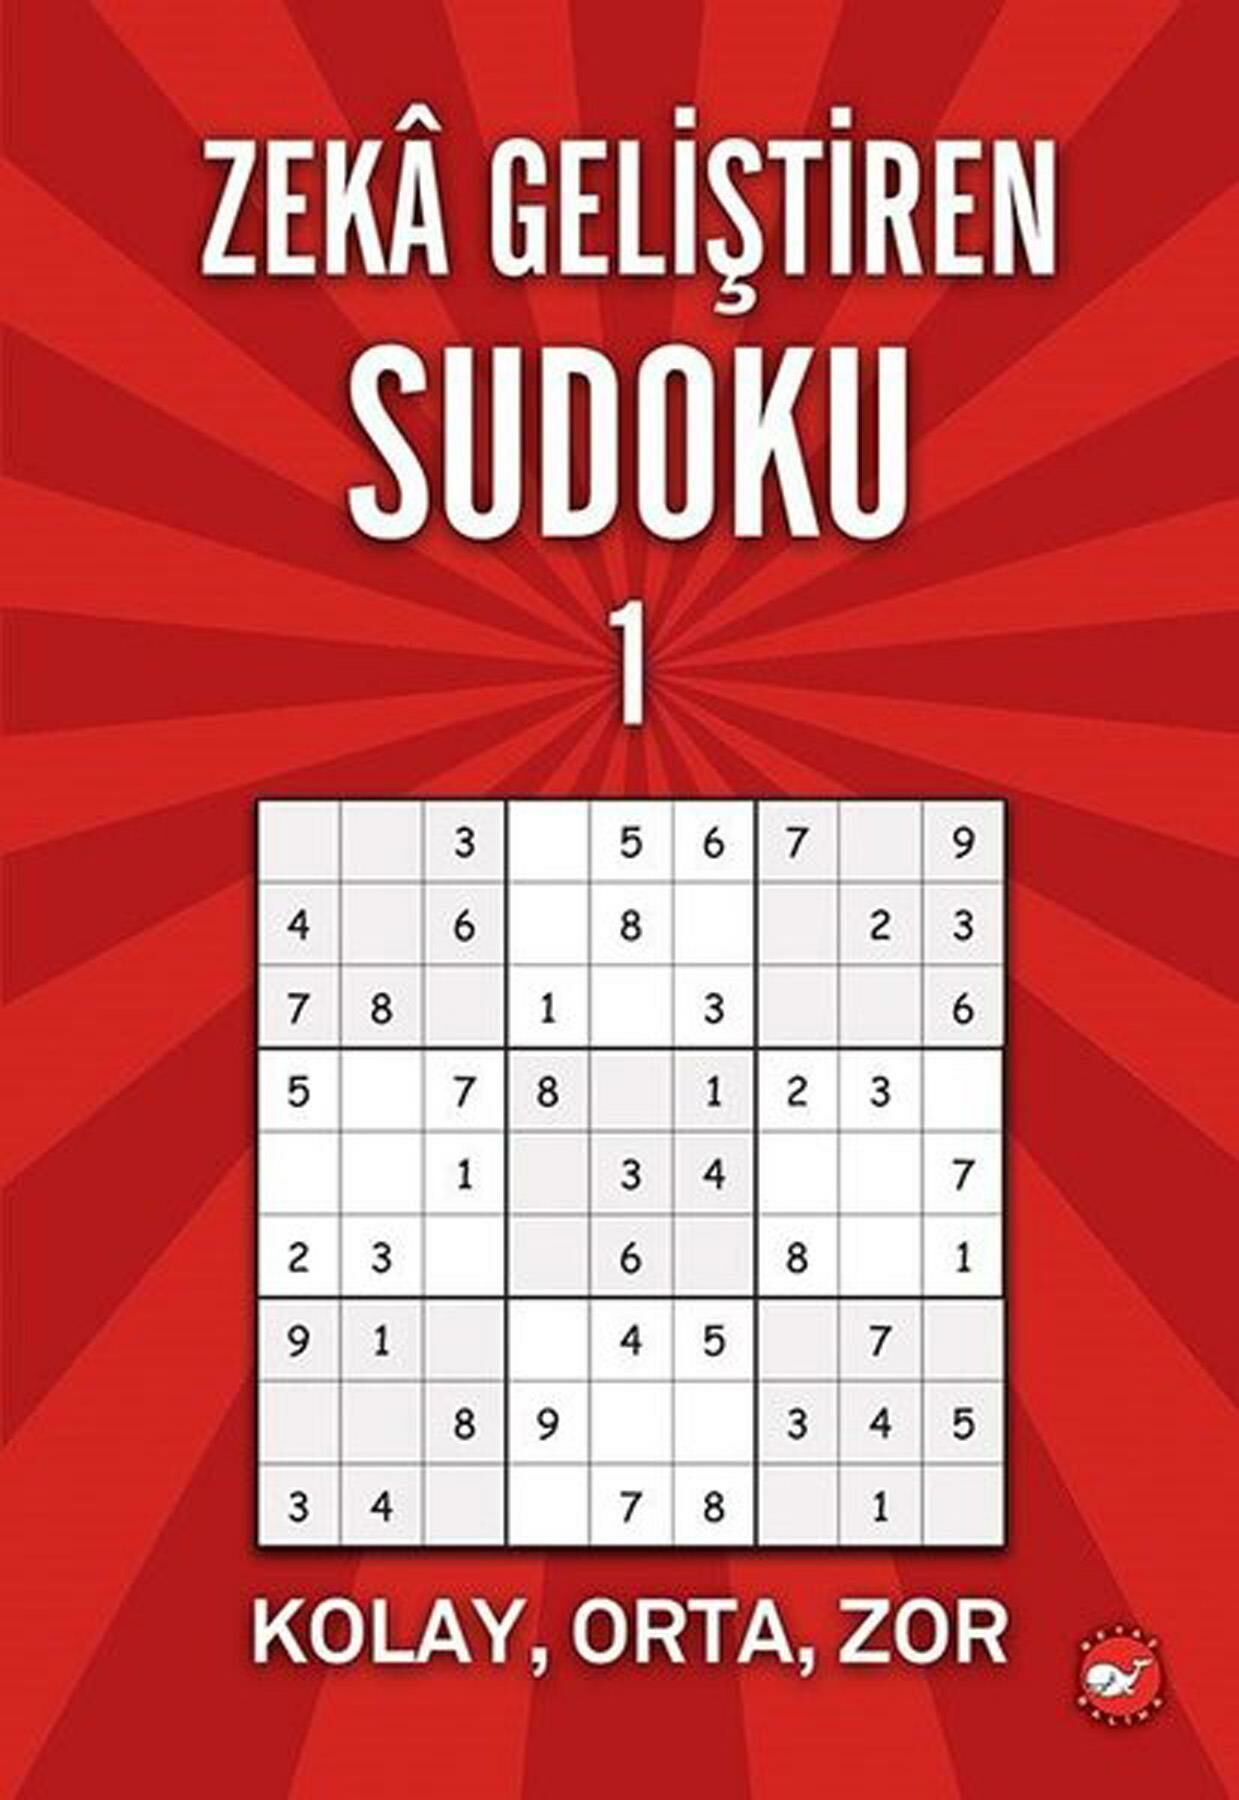 Zeka Geliştiren Sudoku 01 Kolay Orta Zor